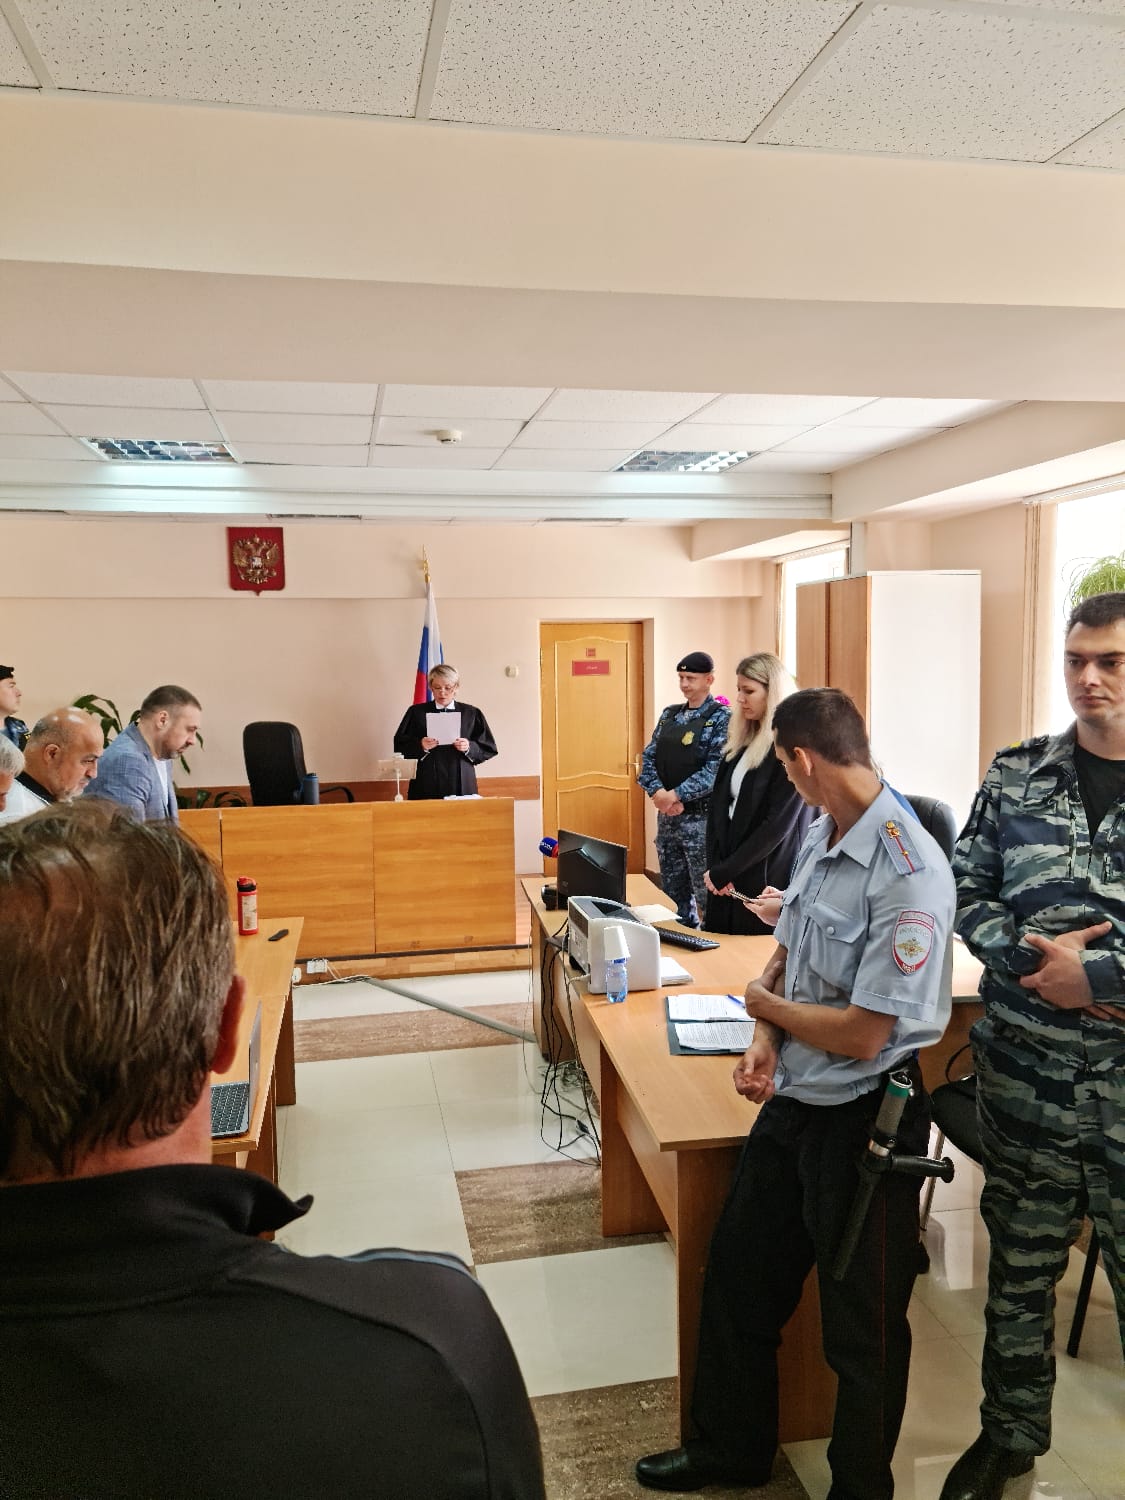 Тюремный срок за защиту природы Камчатки: сотрудников Кроноцкого заповедника взяли под стражу в здании суда - фото 4